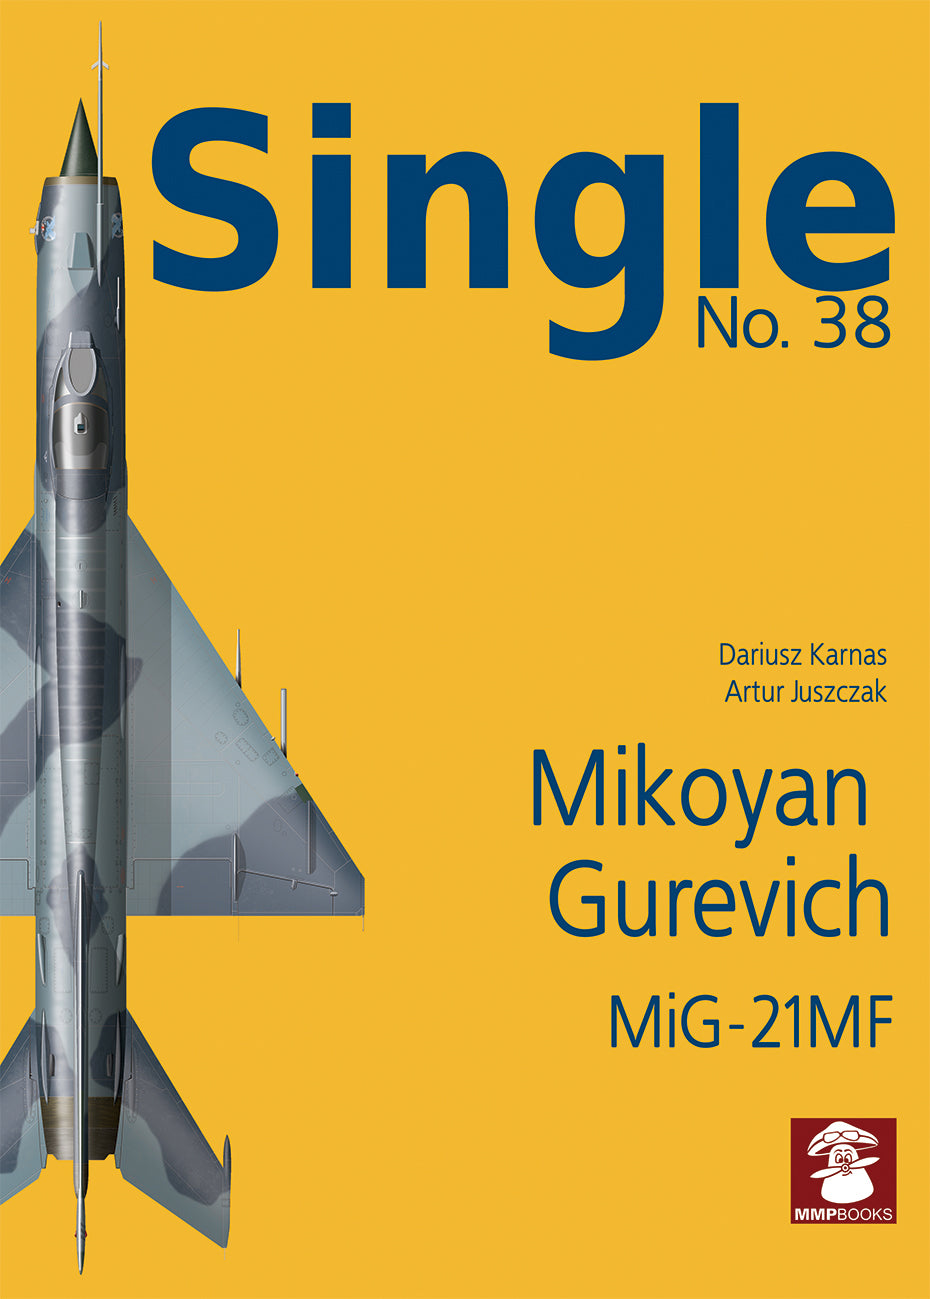 Mikojan Gurewitsch MiG-21MF 